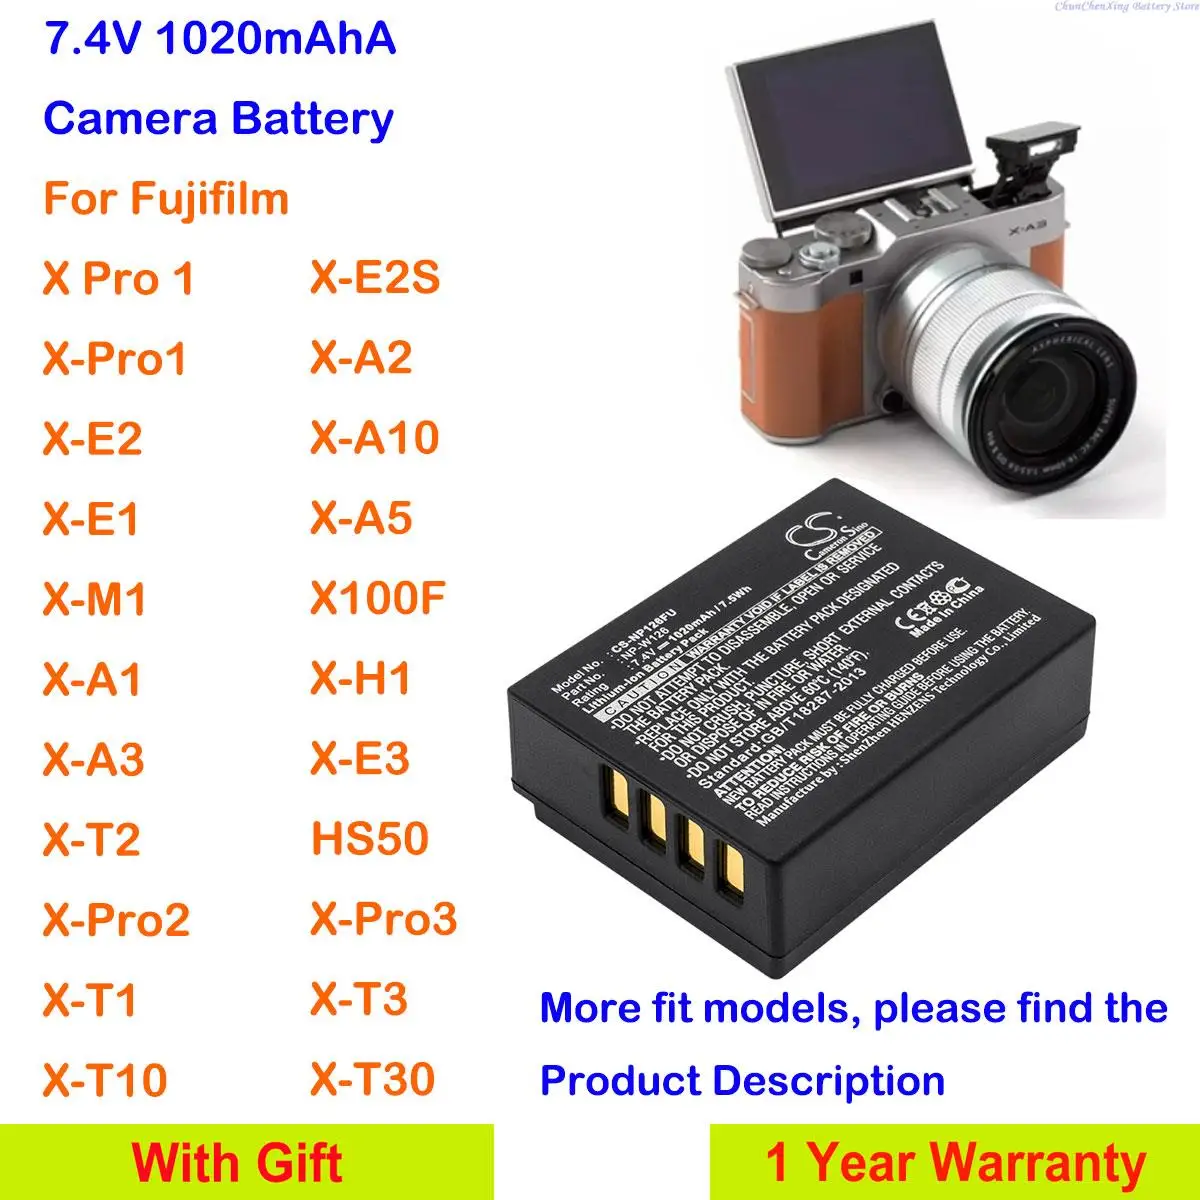 

CS 1020mAh Camera Battery NP-W126,NP-W126S for Fujifilm FinePix X-E1,X-E2,X-E2S,X-E3,X-M1,X-A1,X-A3,X-A5,X-T1,X-T2,X-T3,X-T10